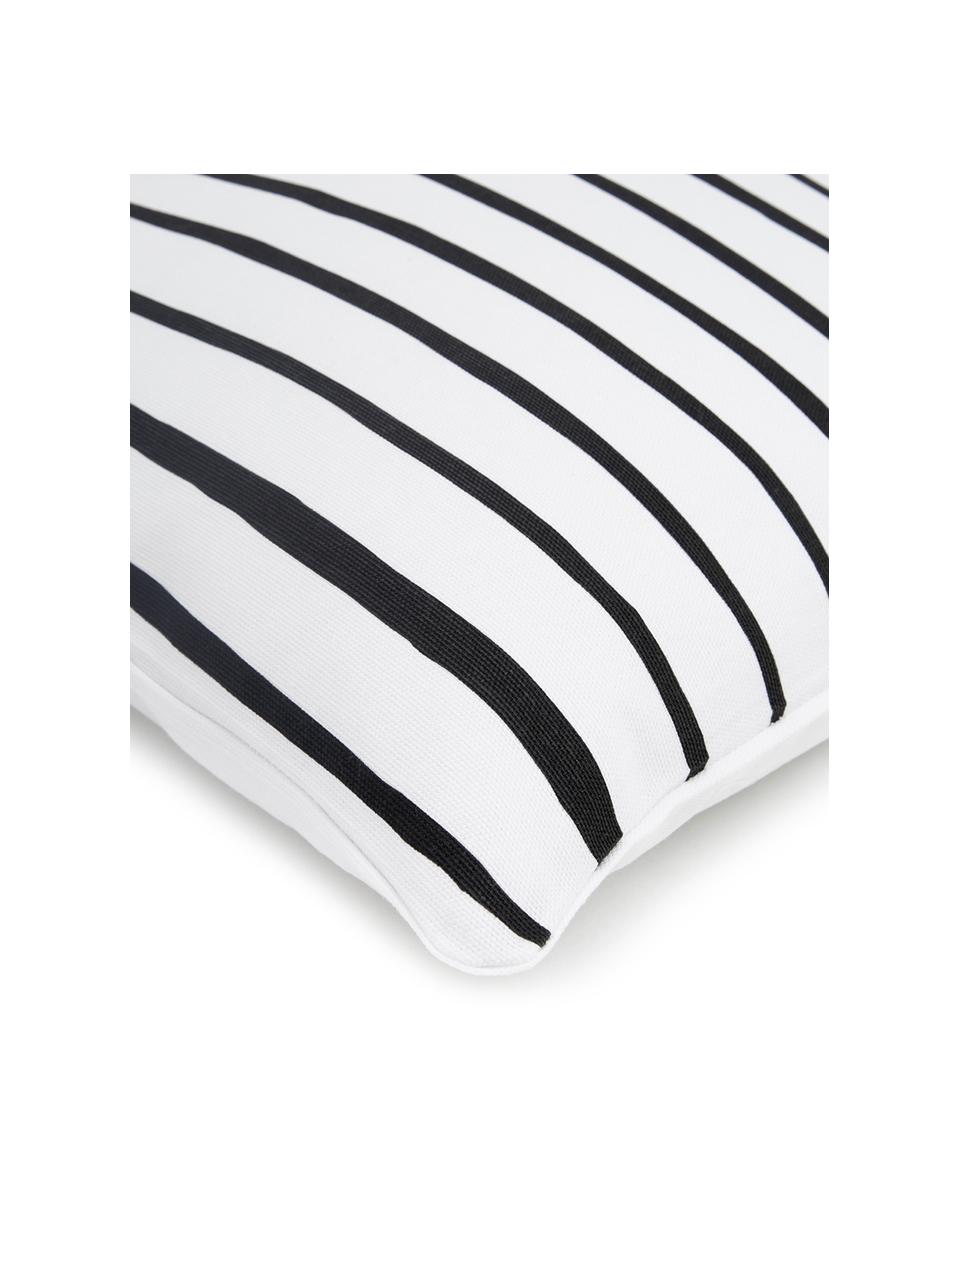 Funda de cojín Ola, 100% algodón, Negro y blanco estampado, An 40 x L 40 cm